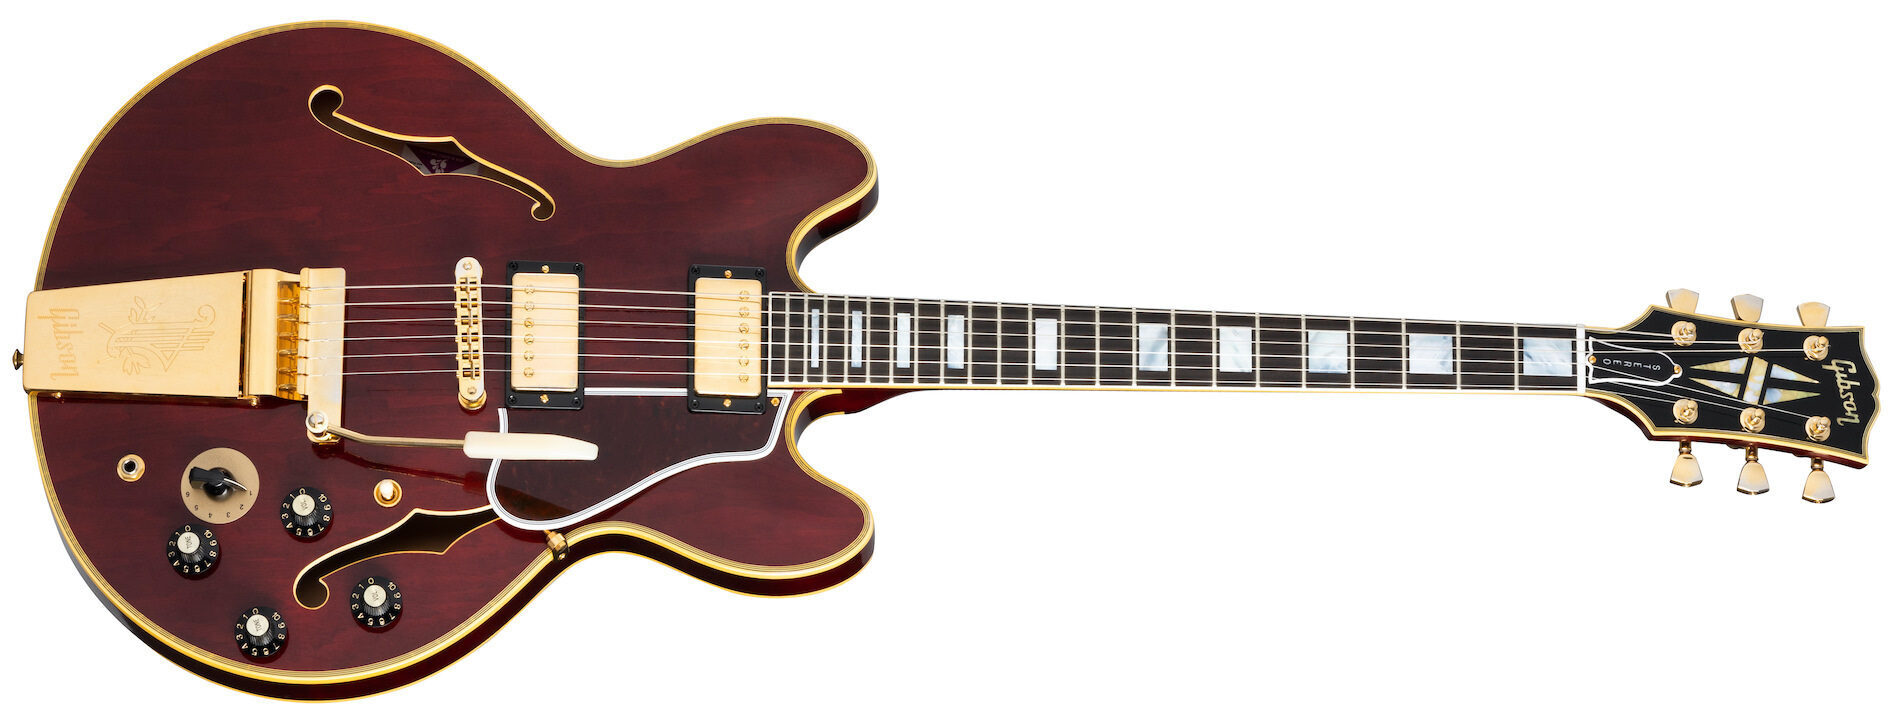 Гитара Gibson Chuck Berry 1970s ES-355 в фирменной расцветке Wine Red